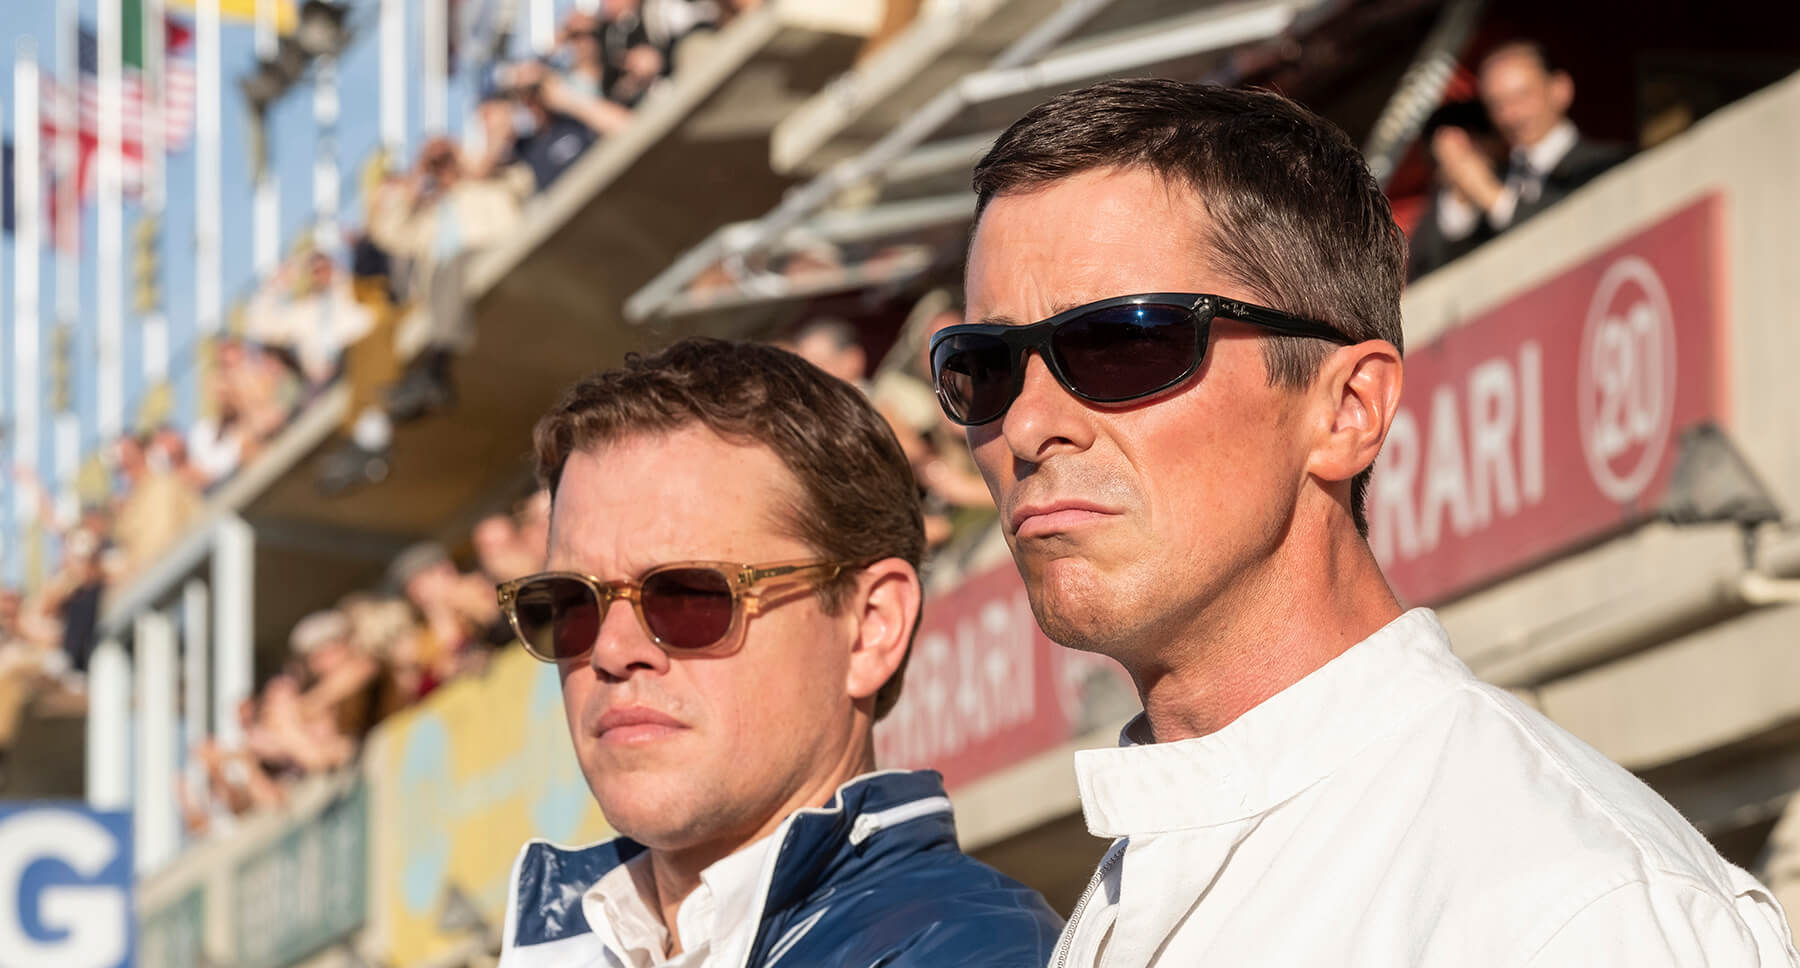 Matt Damon y Christian Bale protagonizaron la historia de Ford vs Ferrari en el cine, una película que originalmente estaba prevista para Brad Pitt y Tom Cruise, pero para la que no se pudo reunir el presupuesto